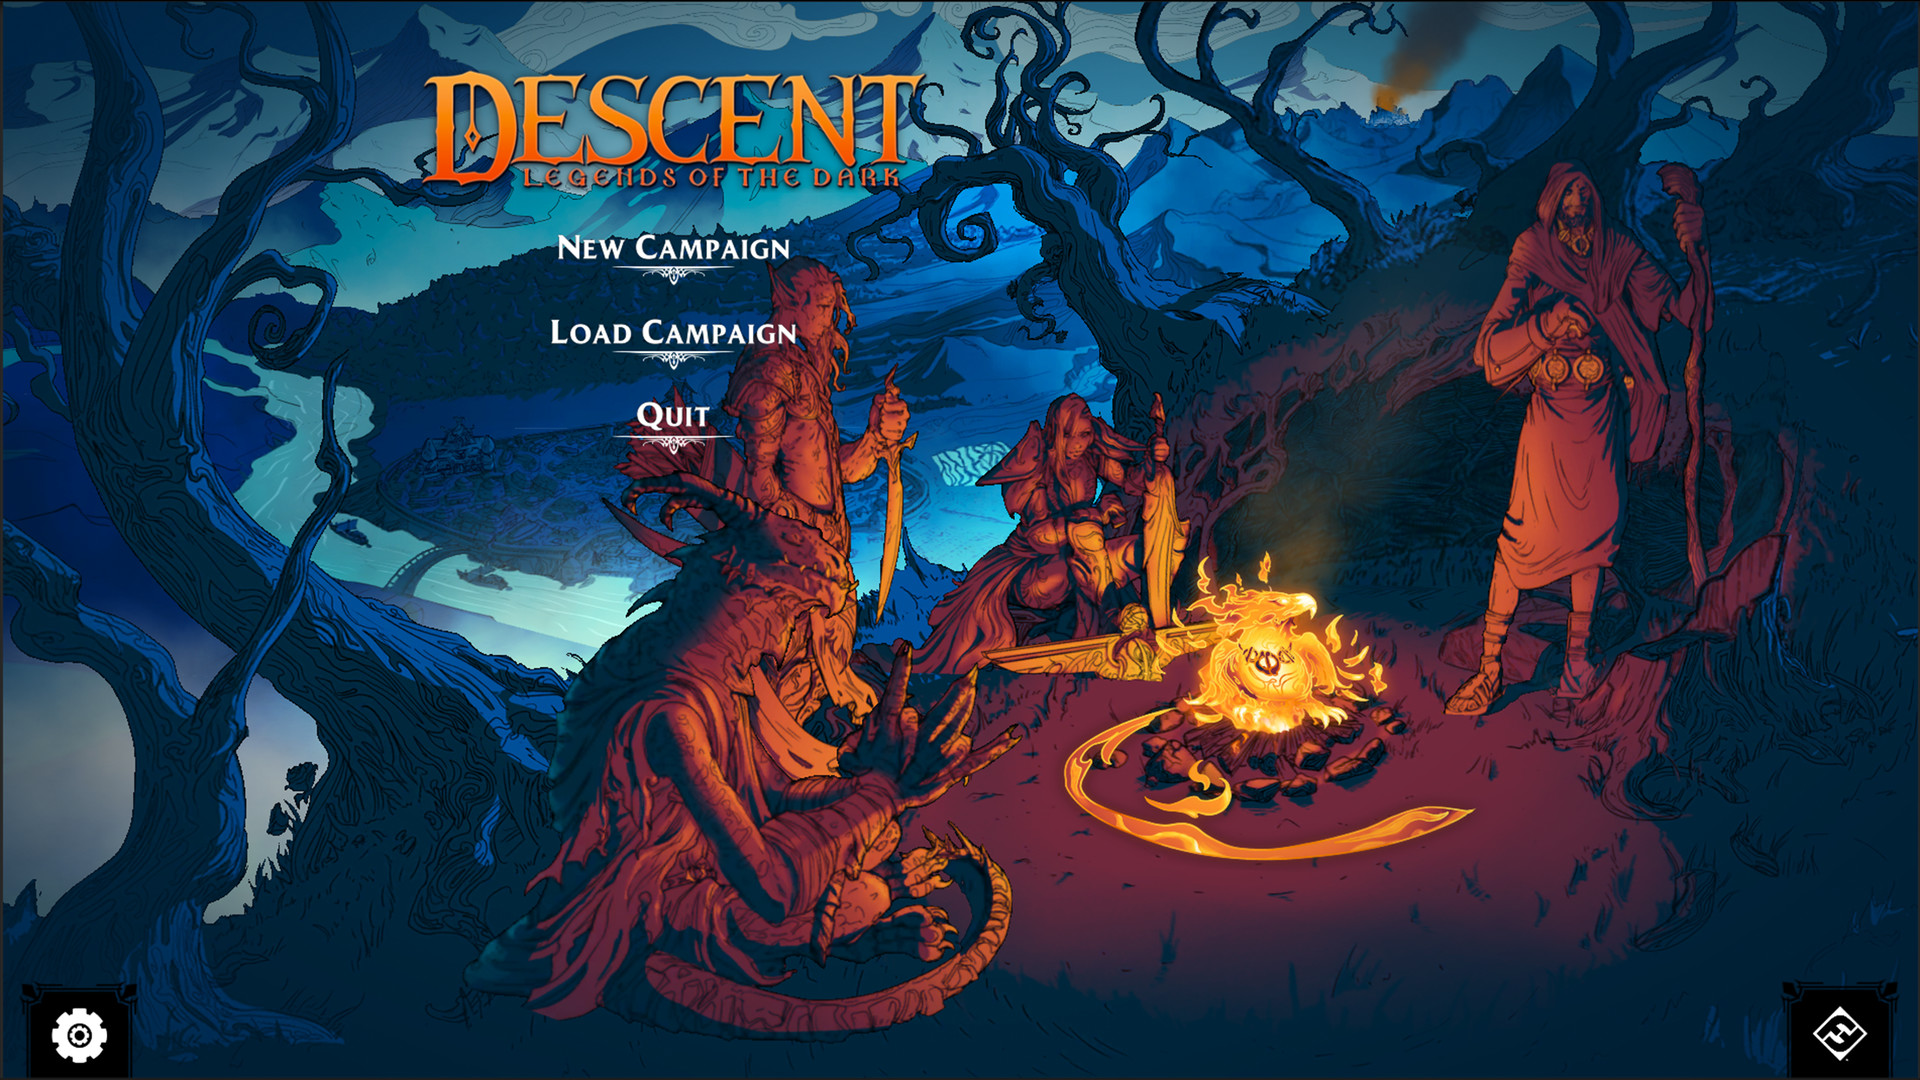 Descent: Legends of the Dark en Steam